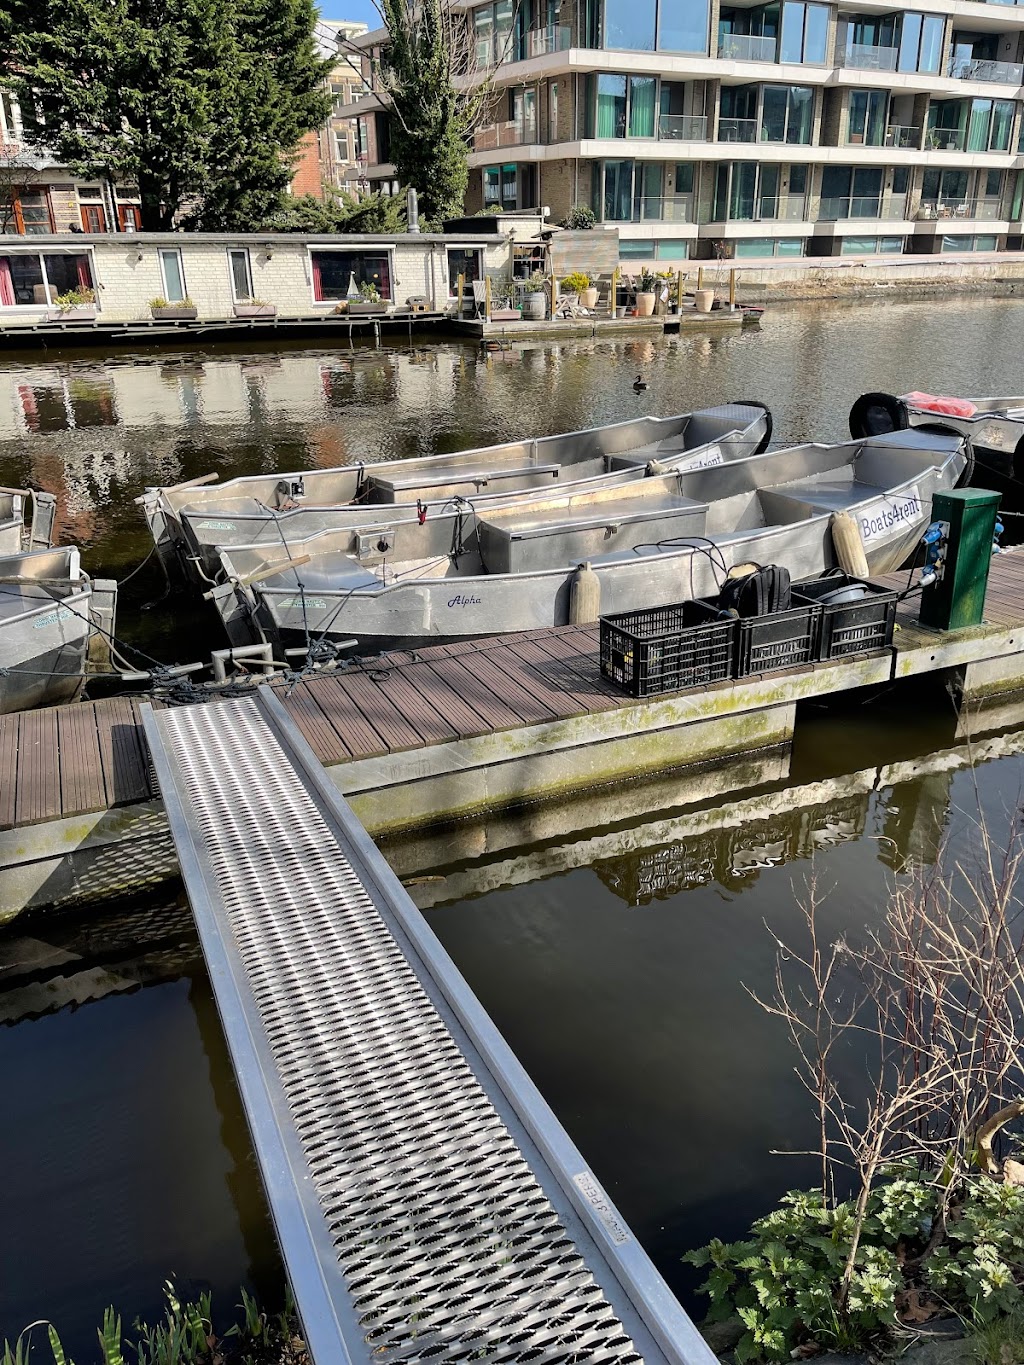 Boats4rent | Dock in canal, Nassaukade 153G, 1053 LK Amsterdam, Netherlands | Phone: 020 700 9377